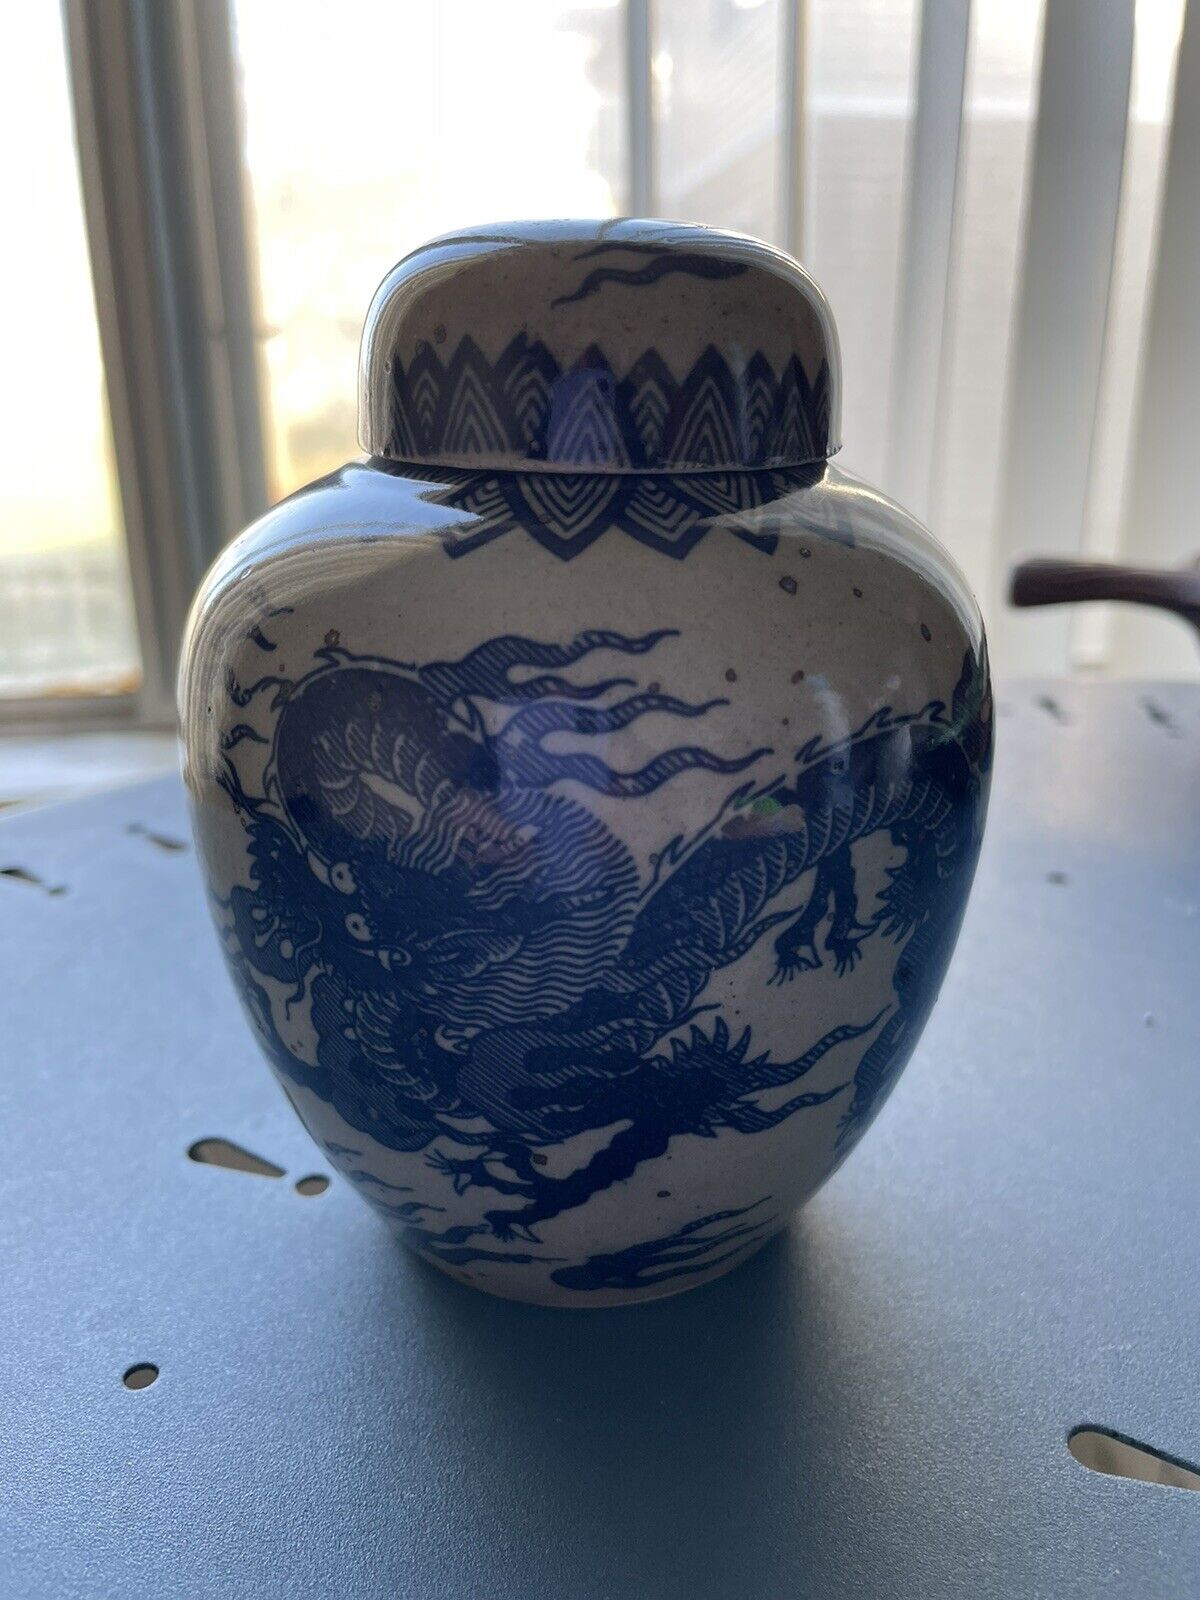 Vintage Japanese Ginger Jar With Blue Dragon Motif